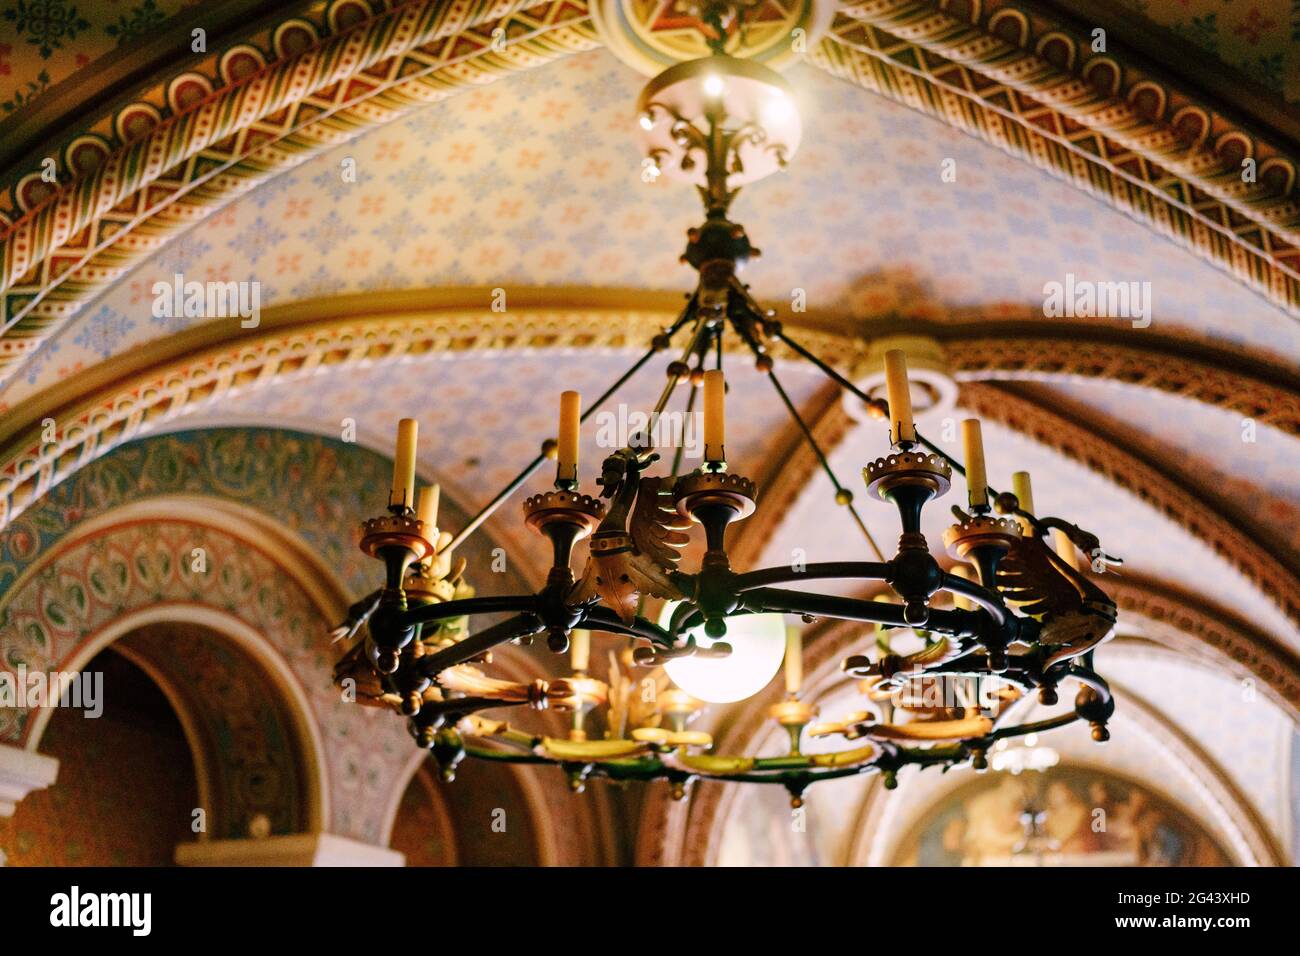 Mittelalterlicher Kronleuchter mit Wachskerzen. Kronleuchter aus Metall im  Schlossstil mit echten Kerzen Stockfotografie - Alamy